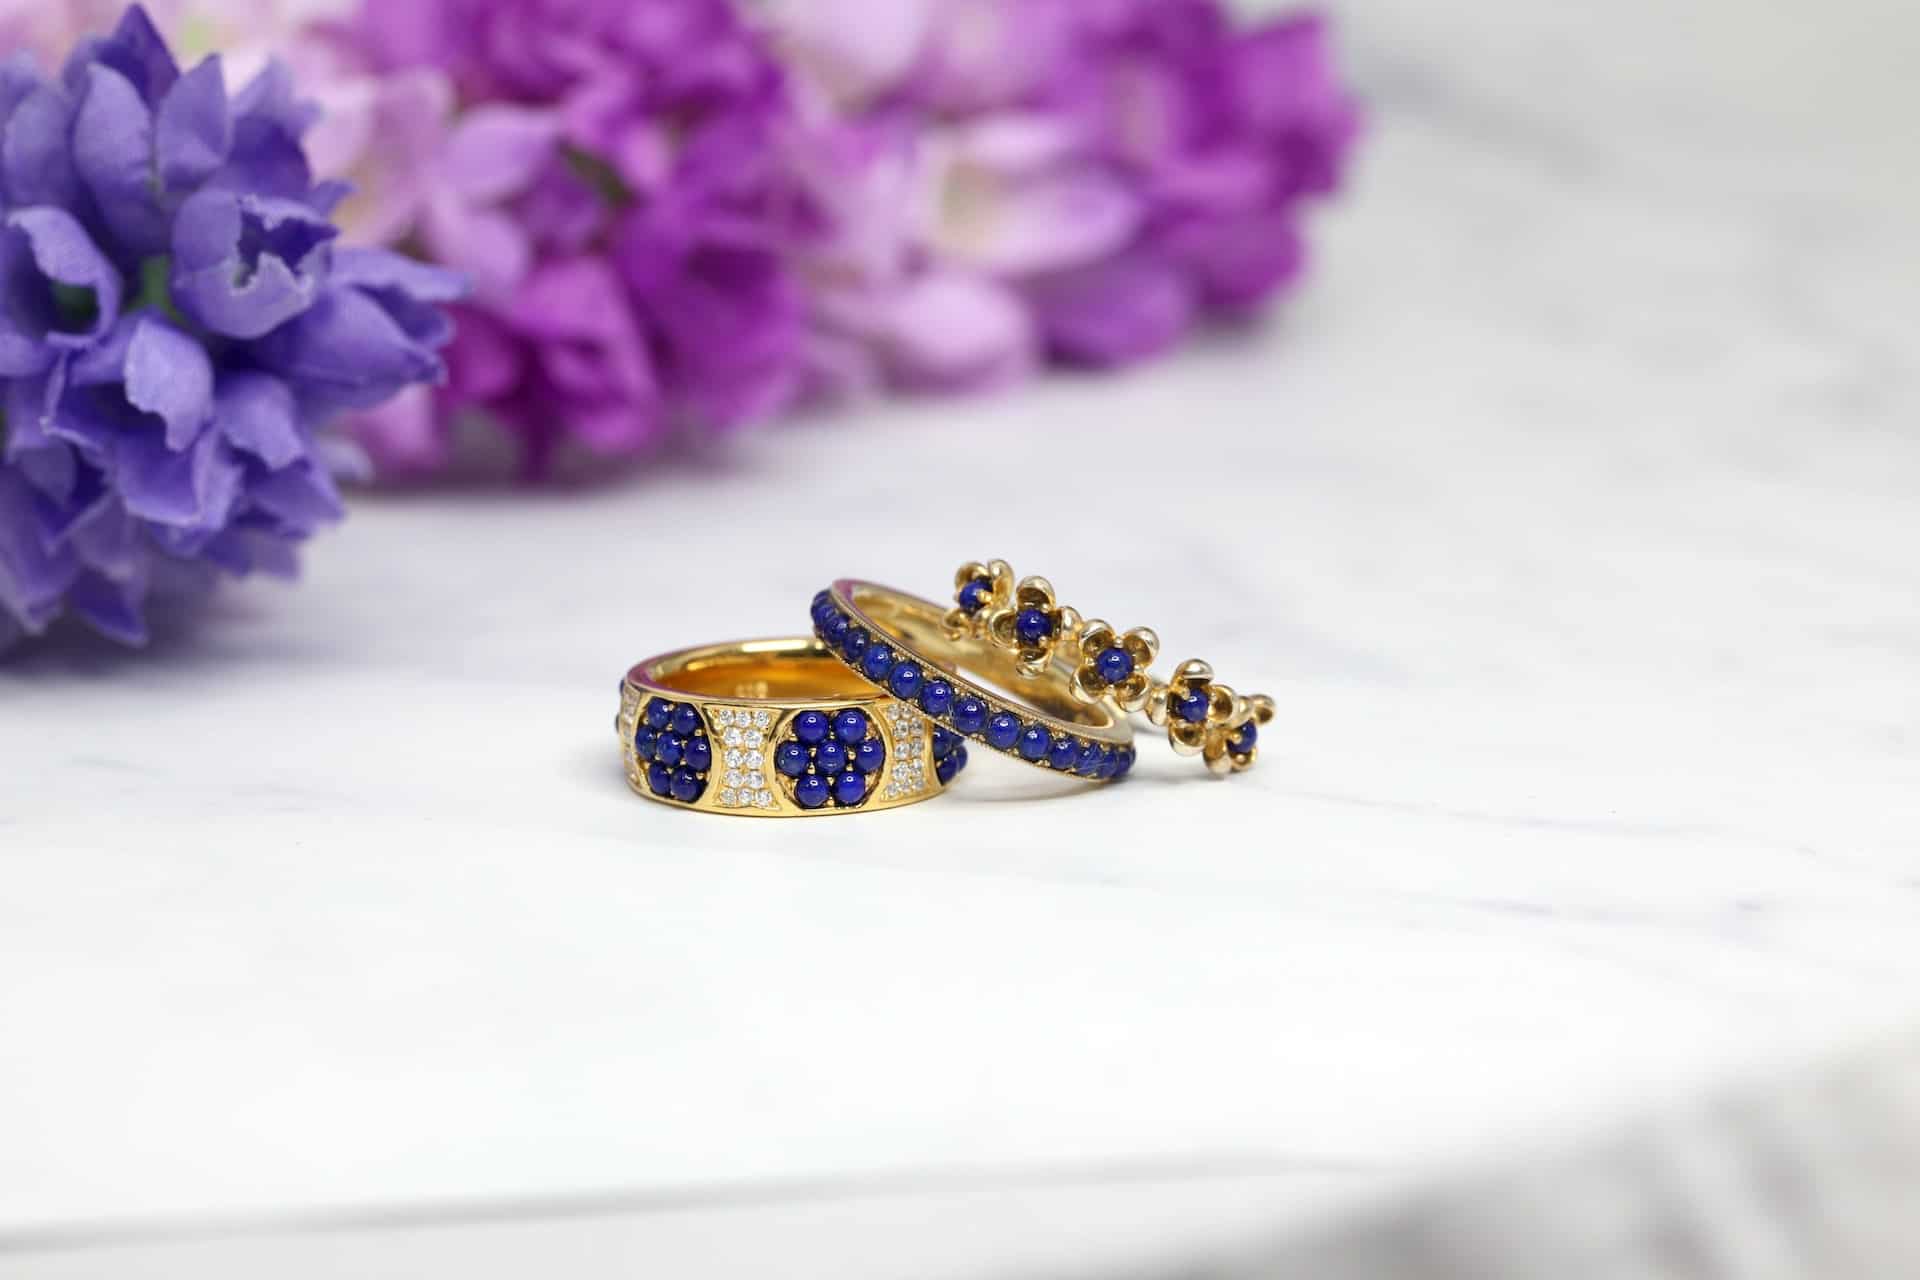 Lapis lazuli rings